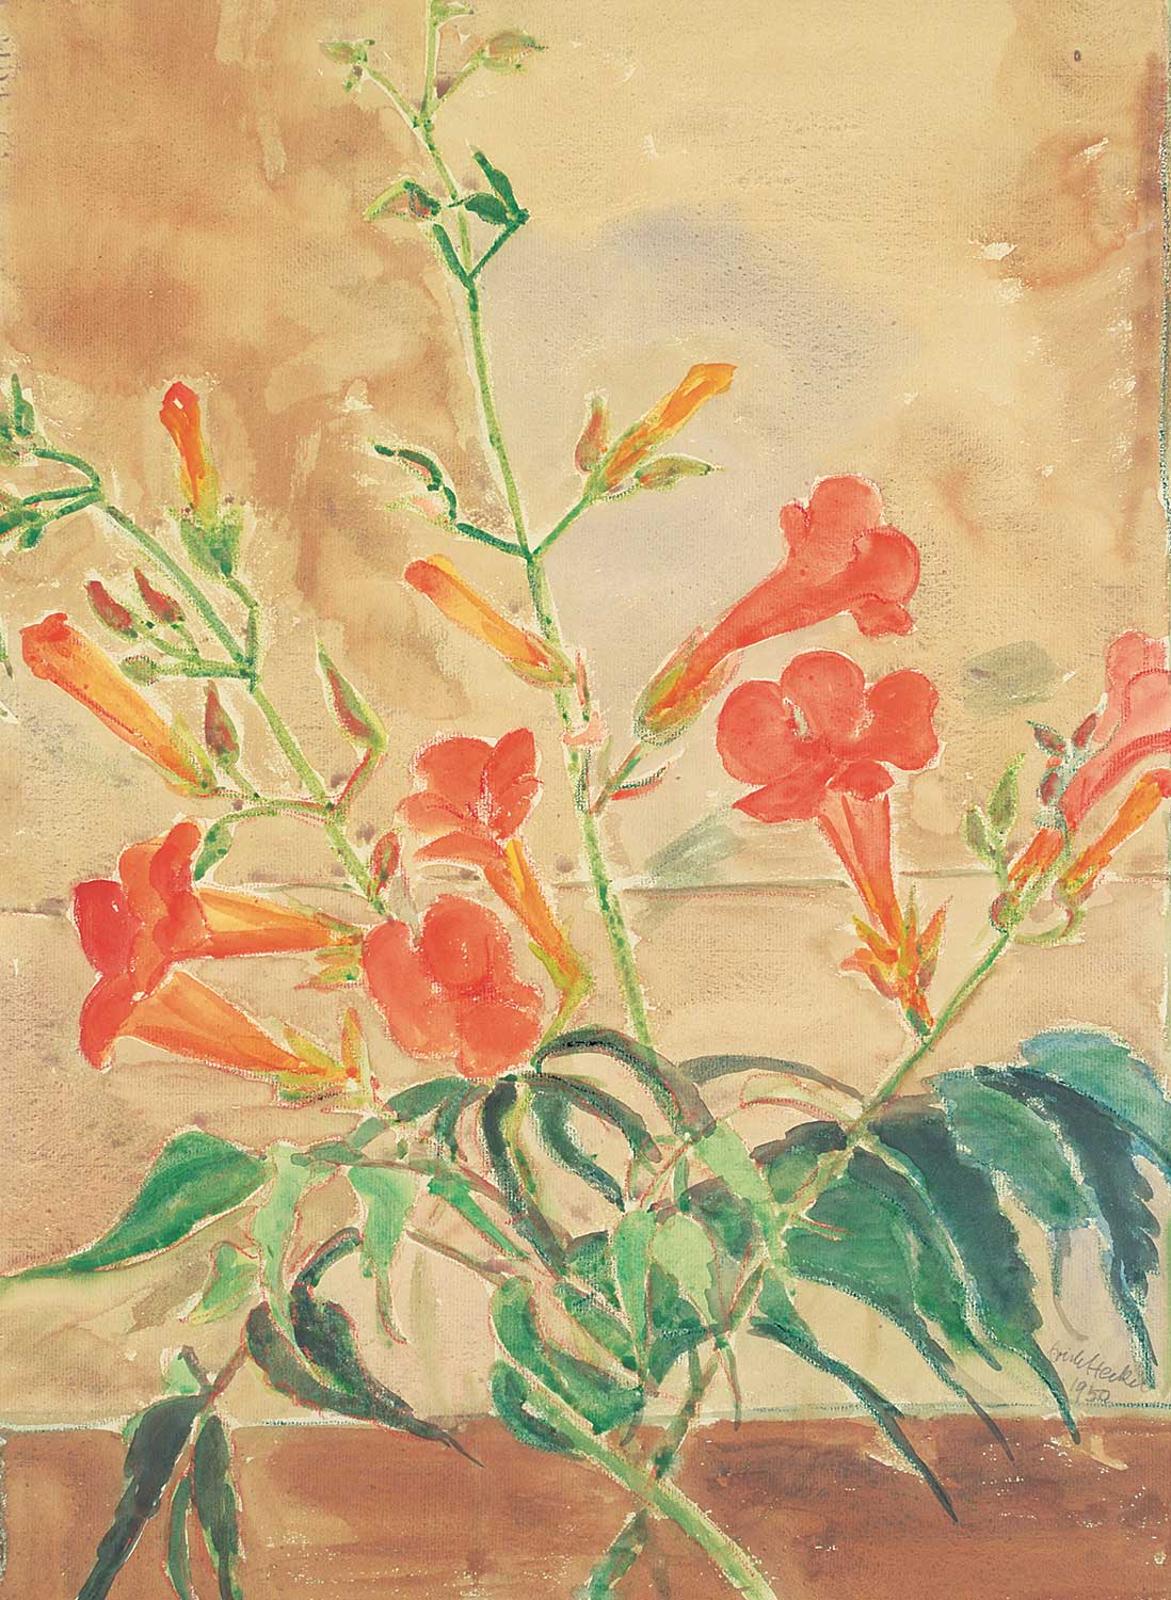 Erich Heckel (1883-1970) - Untitled - Orange Flowers